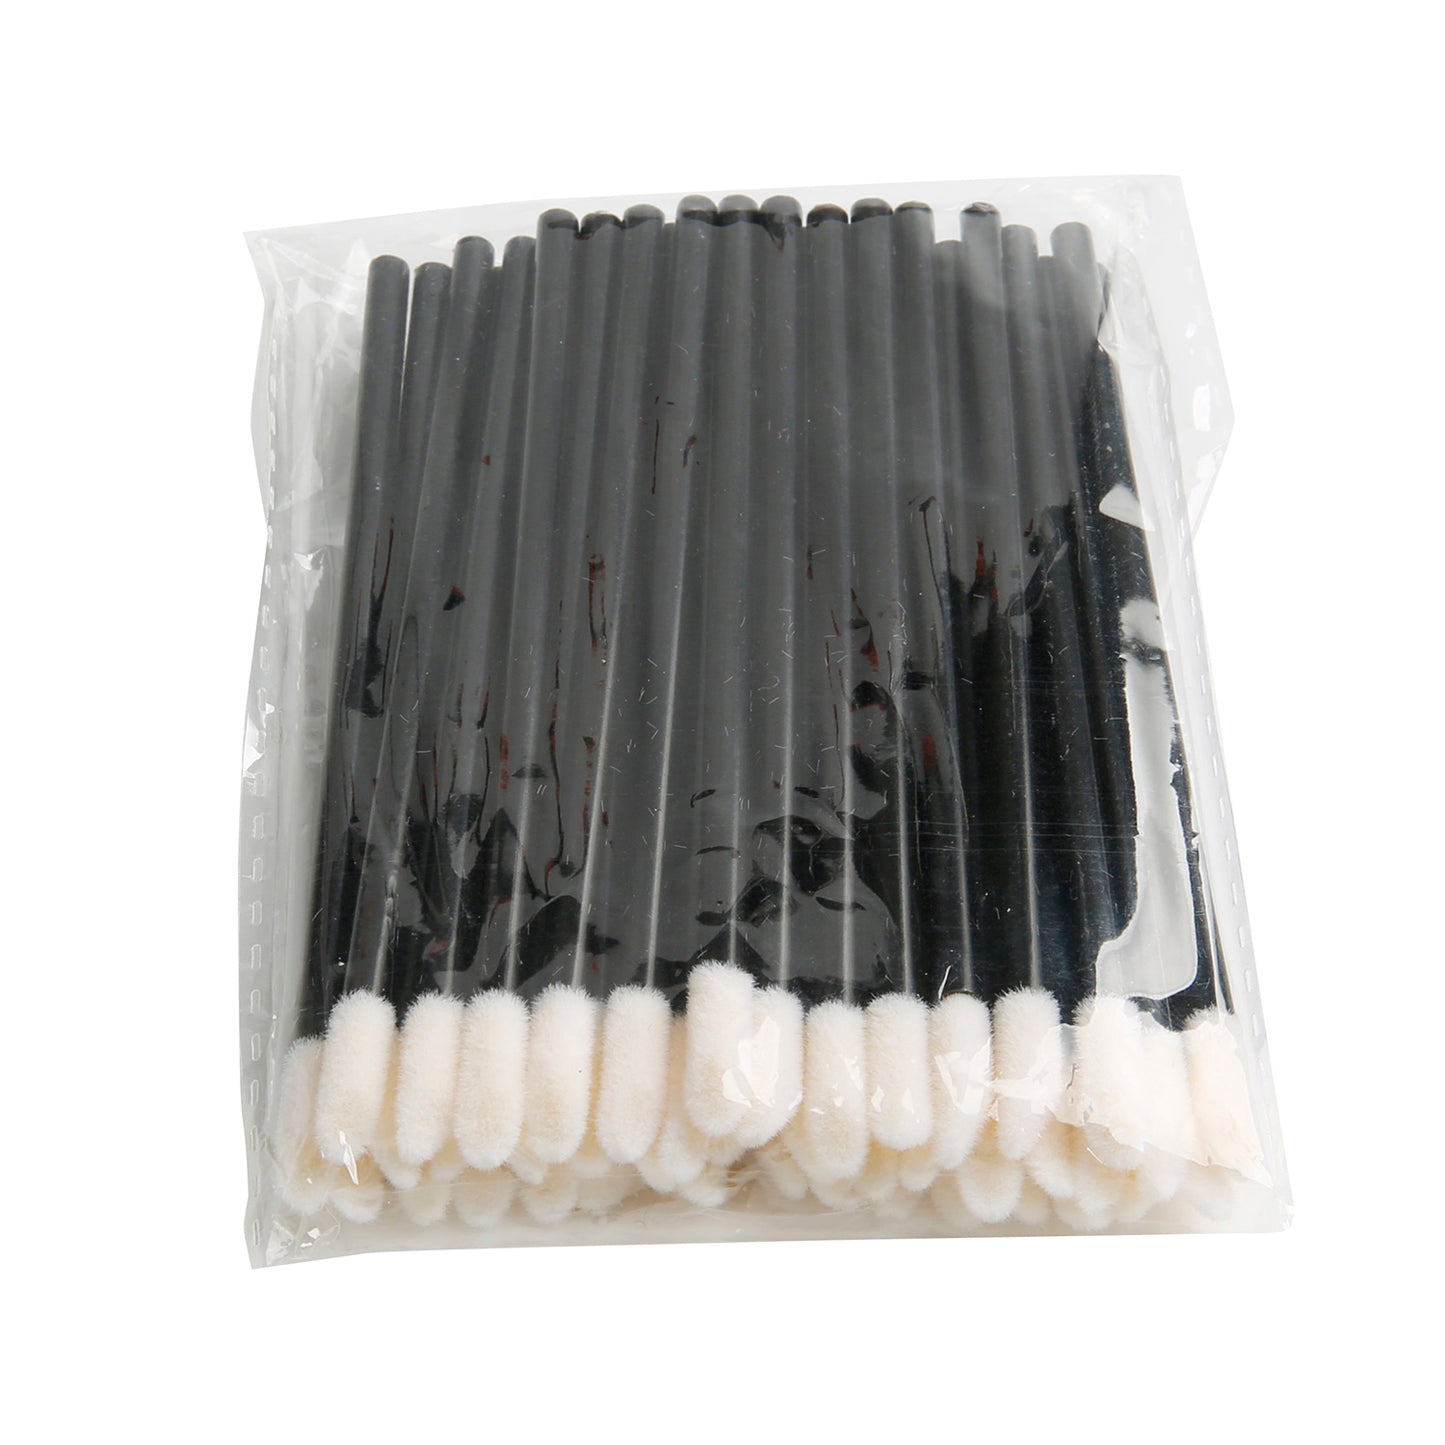 Pigment Brushes（リップブラシ50Pcs/Box)